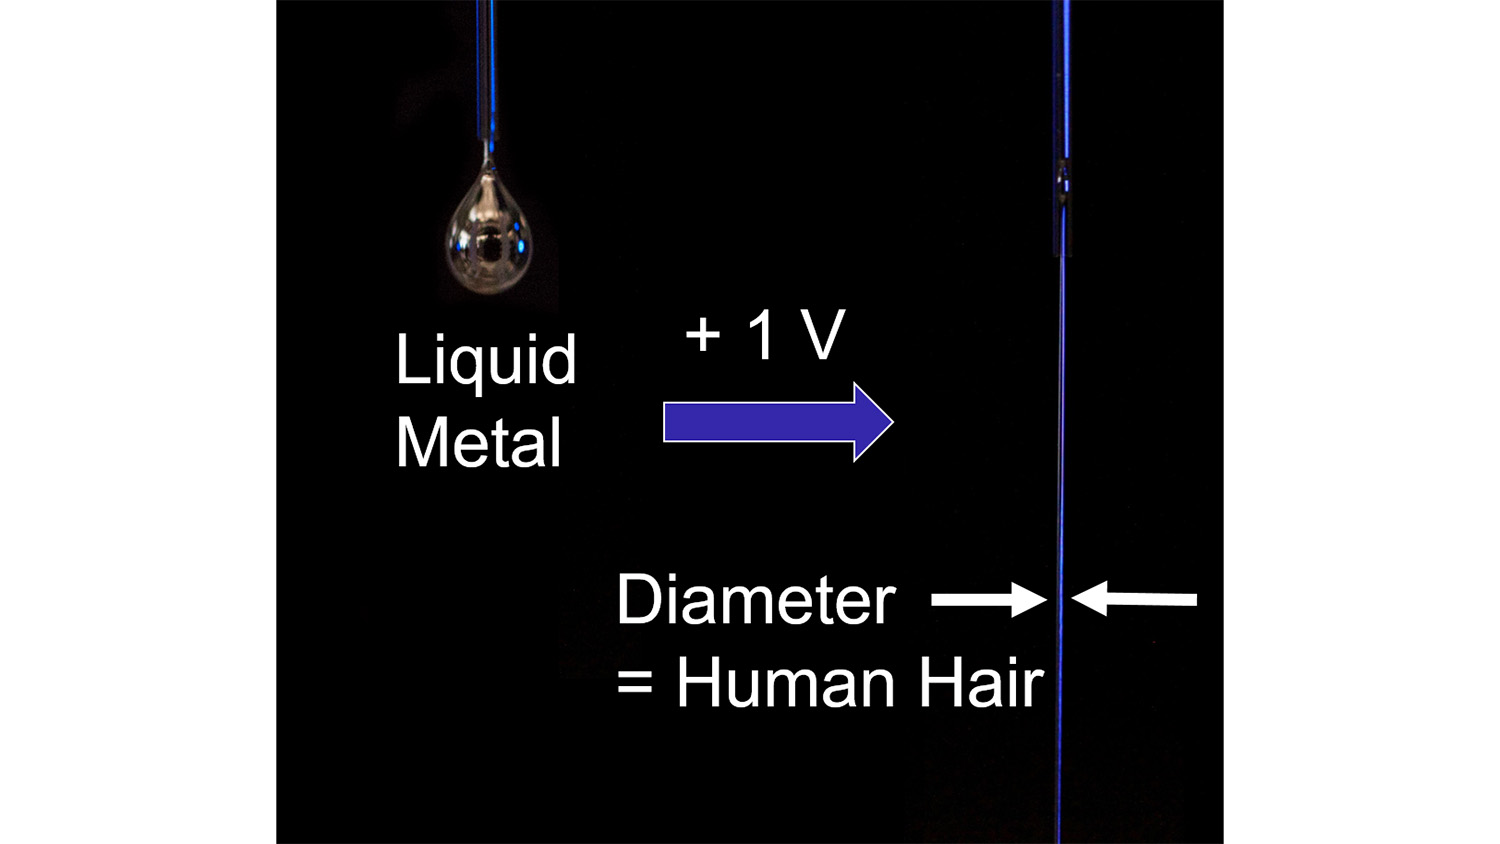 当施加小电压时，液态金属滴变成液态金属流